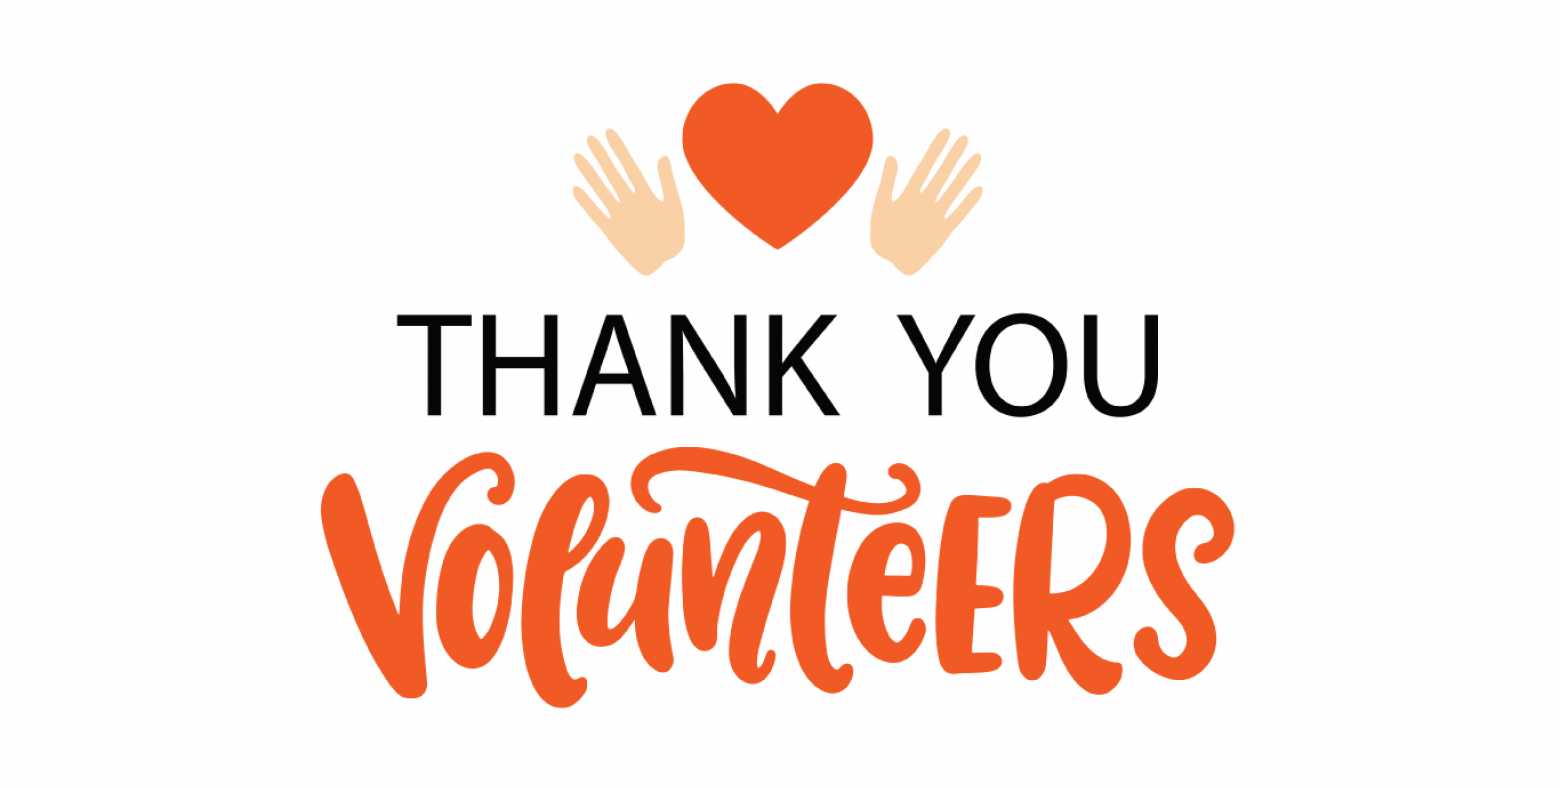 Thank You Volunteers with heart between hands